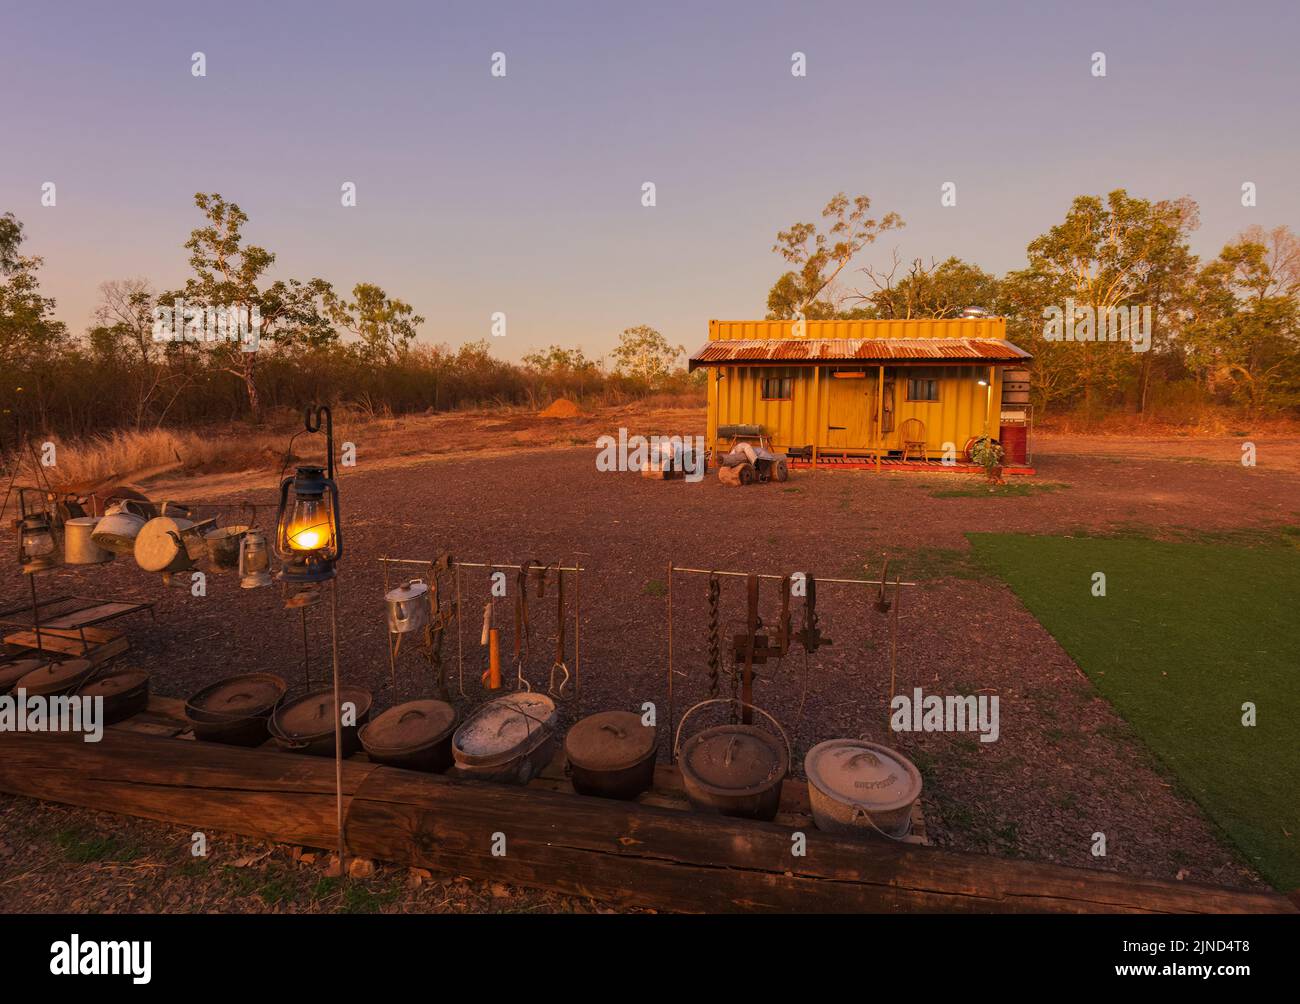 Vue sur le Stockman's Camp de Marksie, une attraction touristique populaire de Katherine, territoire du Nord, territoire du Nord, Australie Banque D'Images